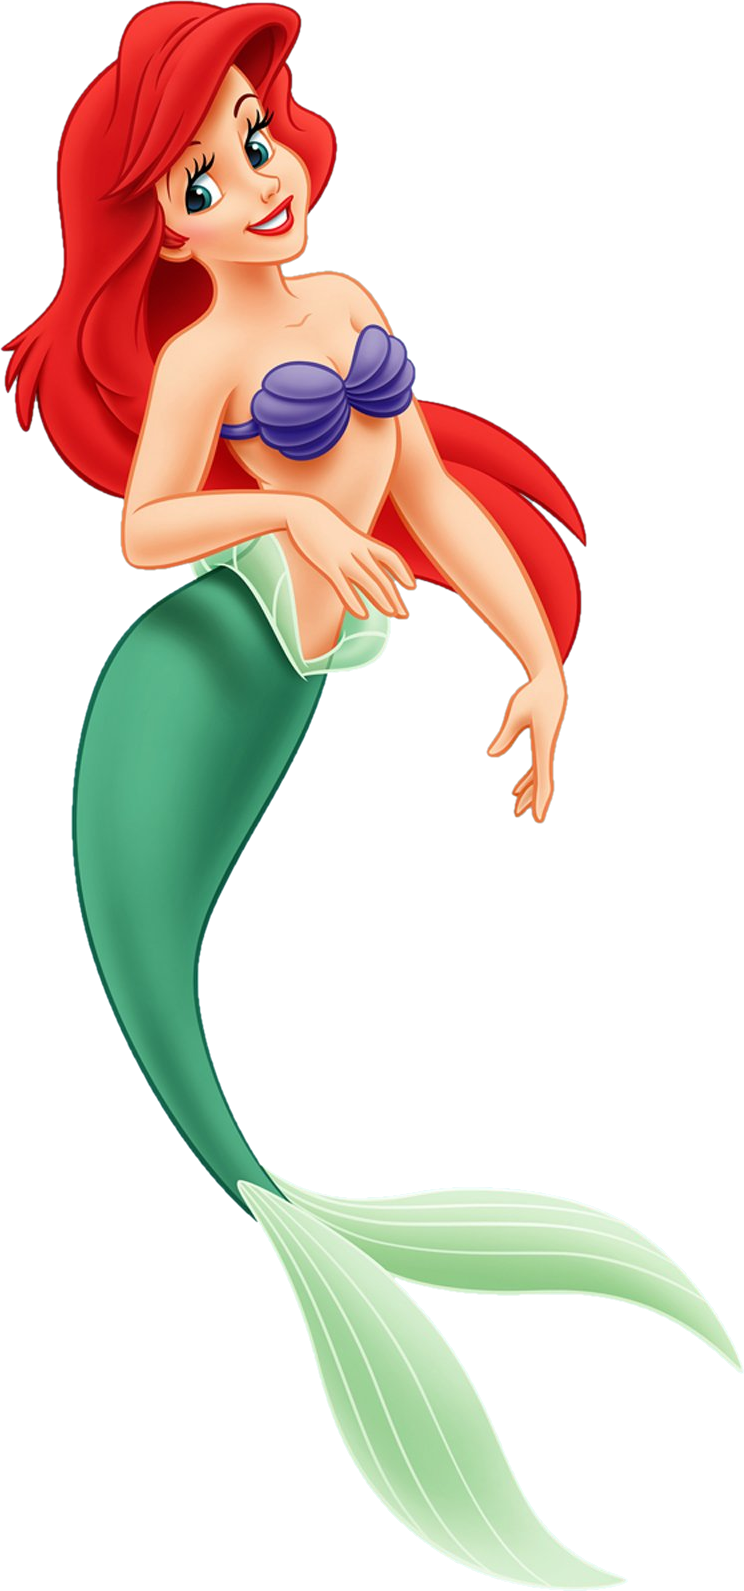 Ariel | Disney Wiki | FANDOM powered by Wikia